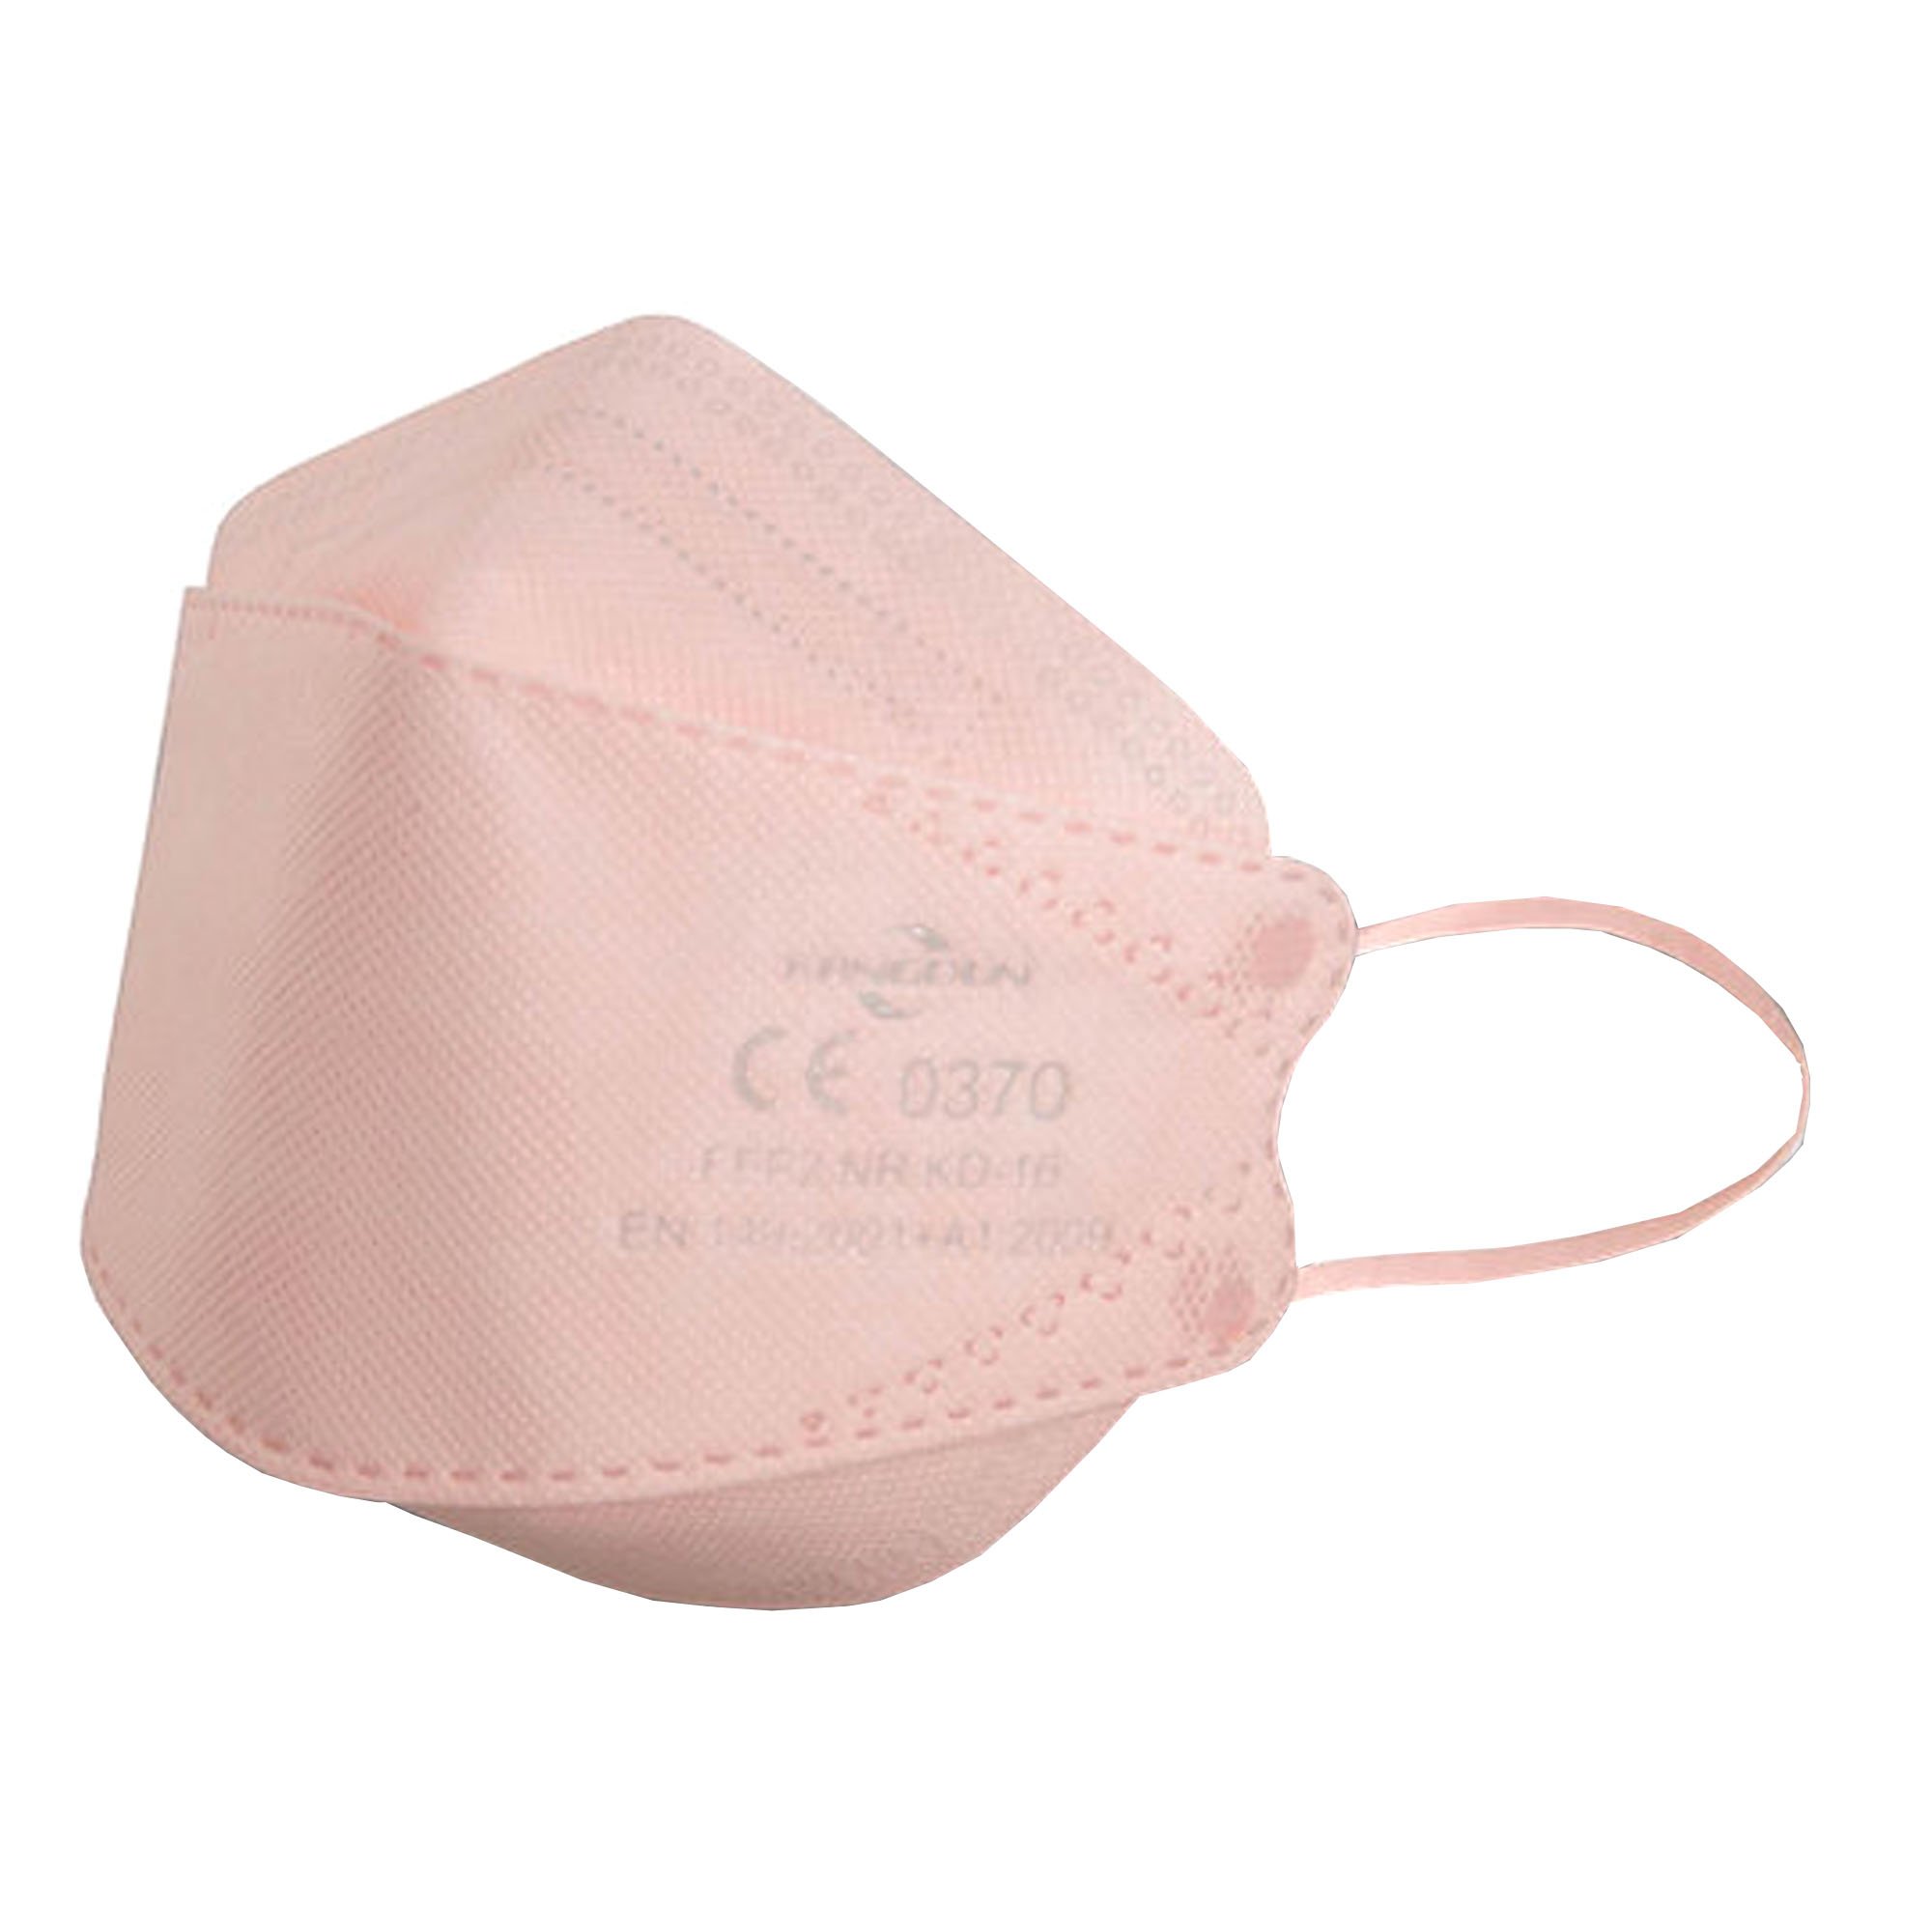 FFP2-Atemschutzmaske rosa 3D in CE-Kennzeichnung der Maske CE-0370 GL52605-28-rosa